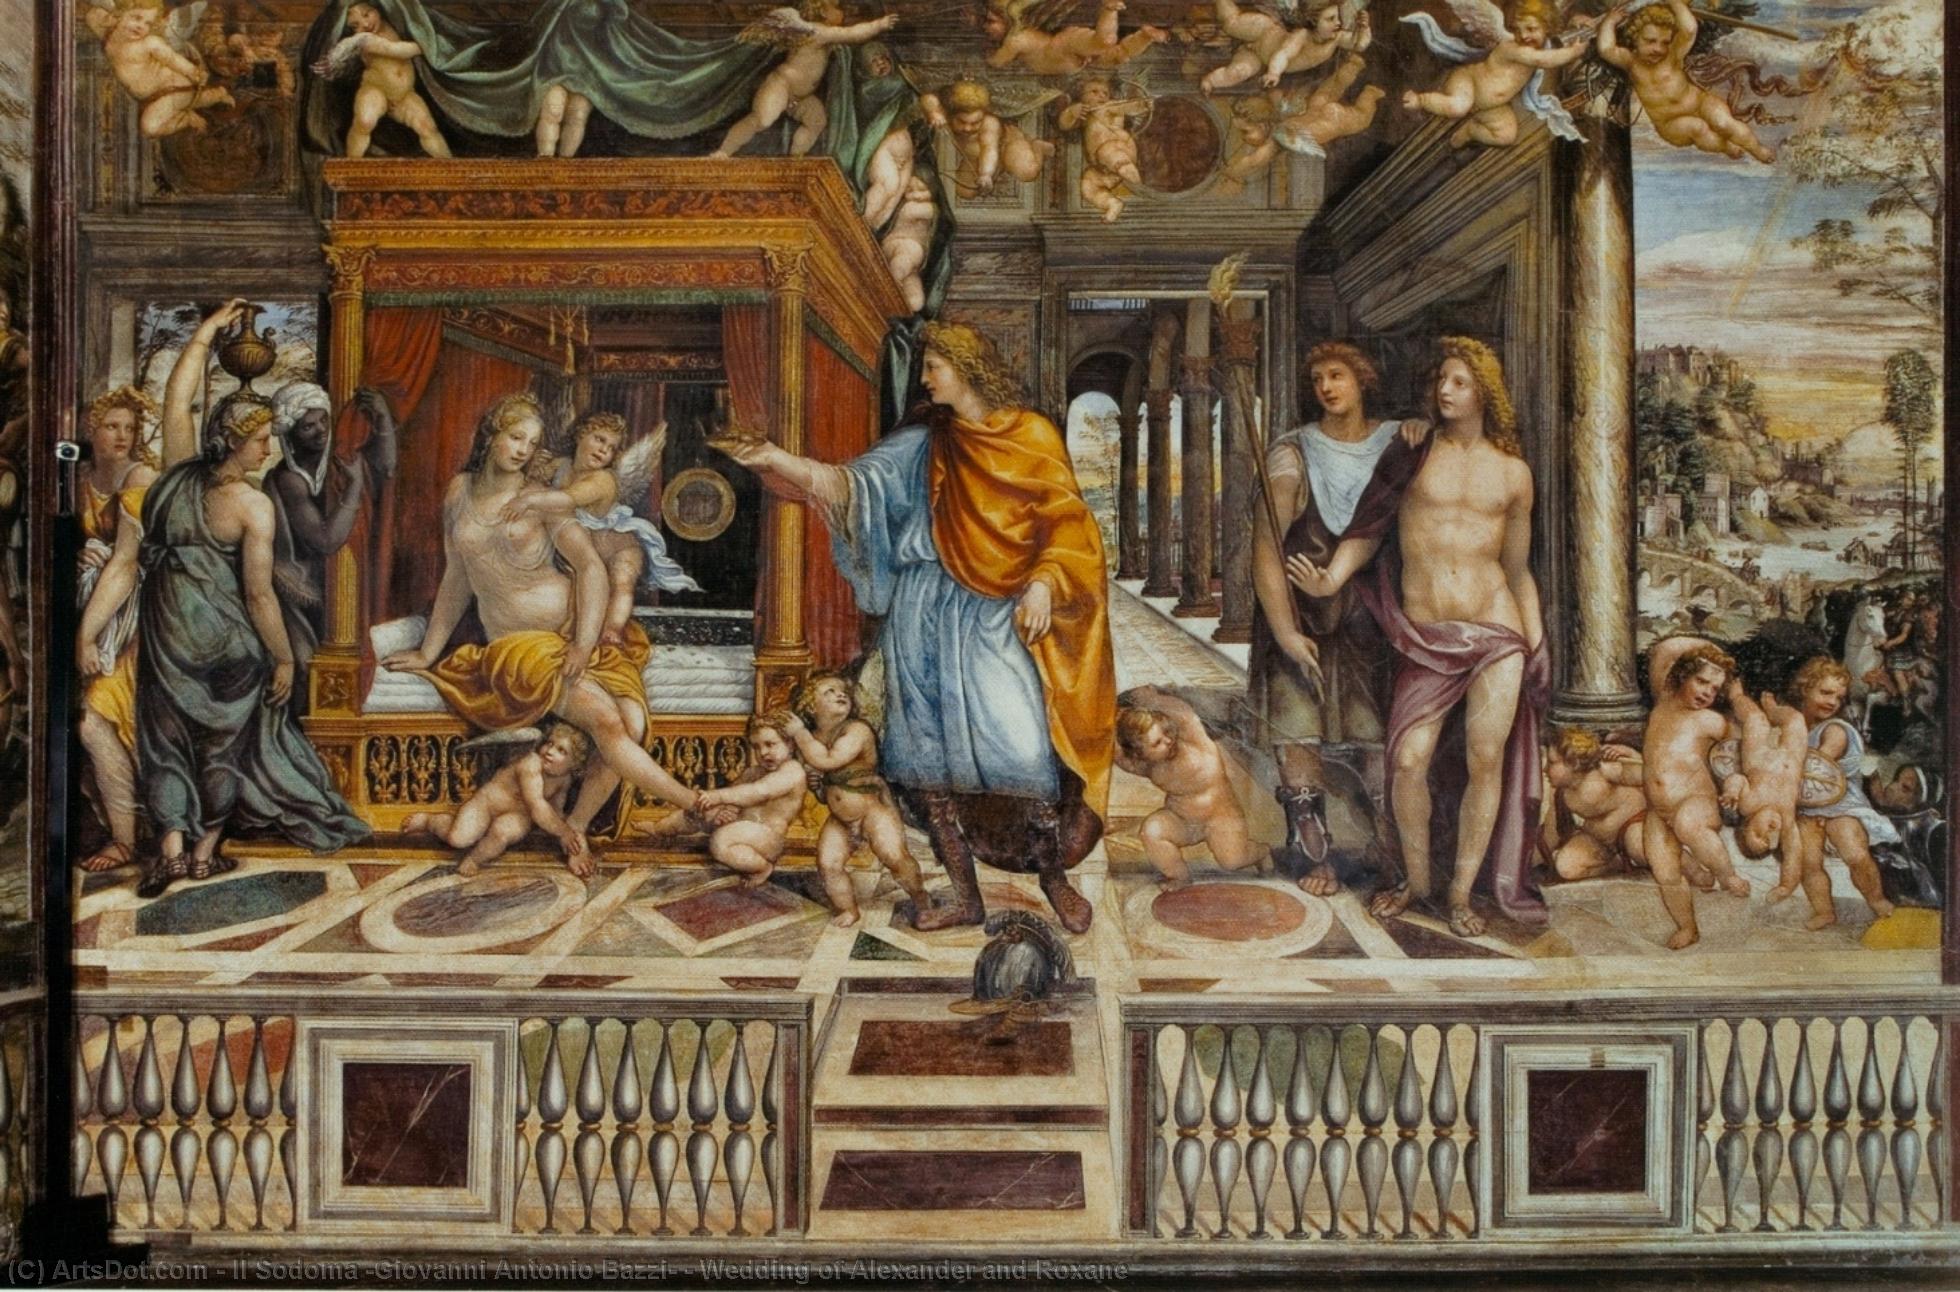 Pedir Reproducciones De Bellas Artes Boda de Alexander y Roxane, 1517 de Il Sodoma (Giovanni Antonio Bazzi) (1447-1549, Italy) | ArtsDot.com